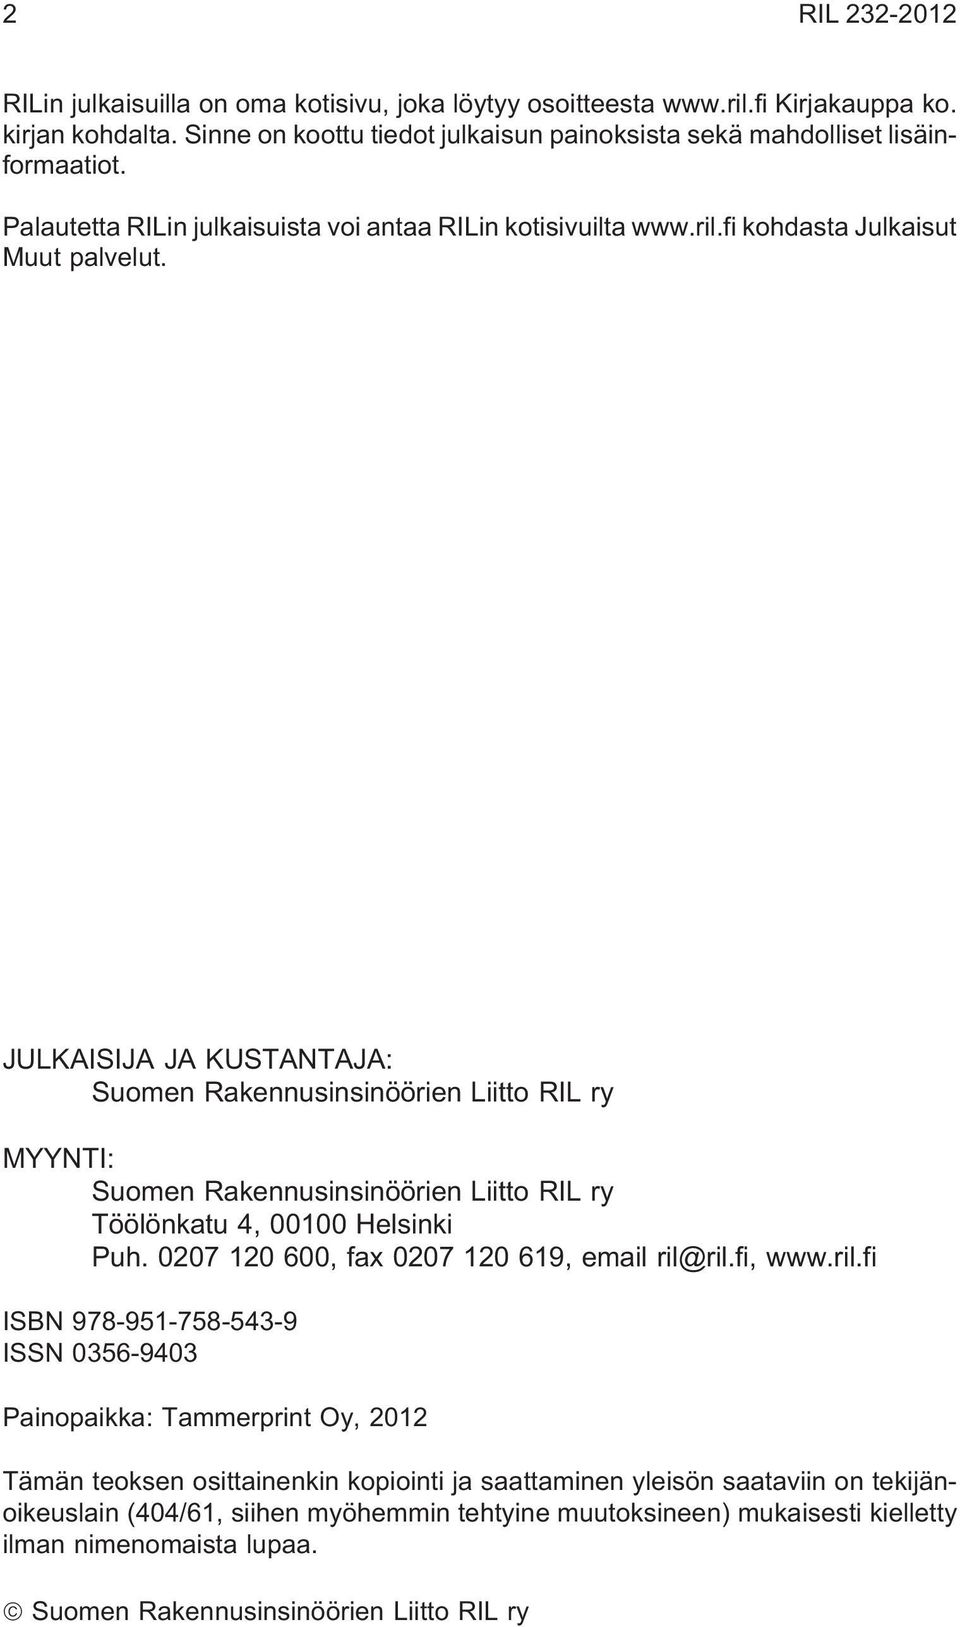 JULKAISIJA JA KUSTANTAJA: Suomen Rakennusinsinöörien Liitto RIL ry MYYNTI: Suomen Rakennusinsinöörien Liitto RIL ry Töölönkatu 4, 00100 Helsinki Puh. 0207 120 600, fax 0207 120 619, email ril@ril.